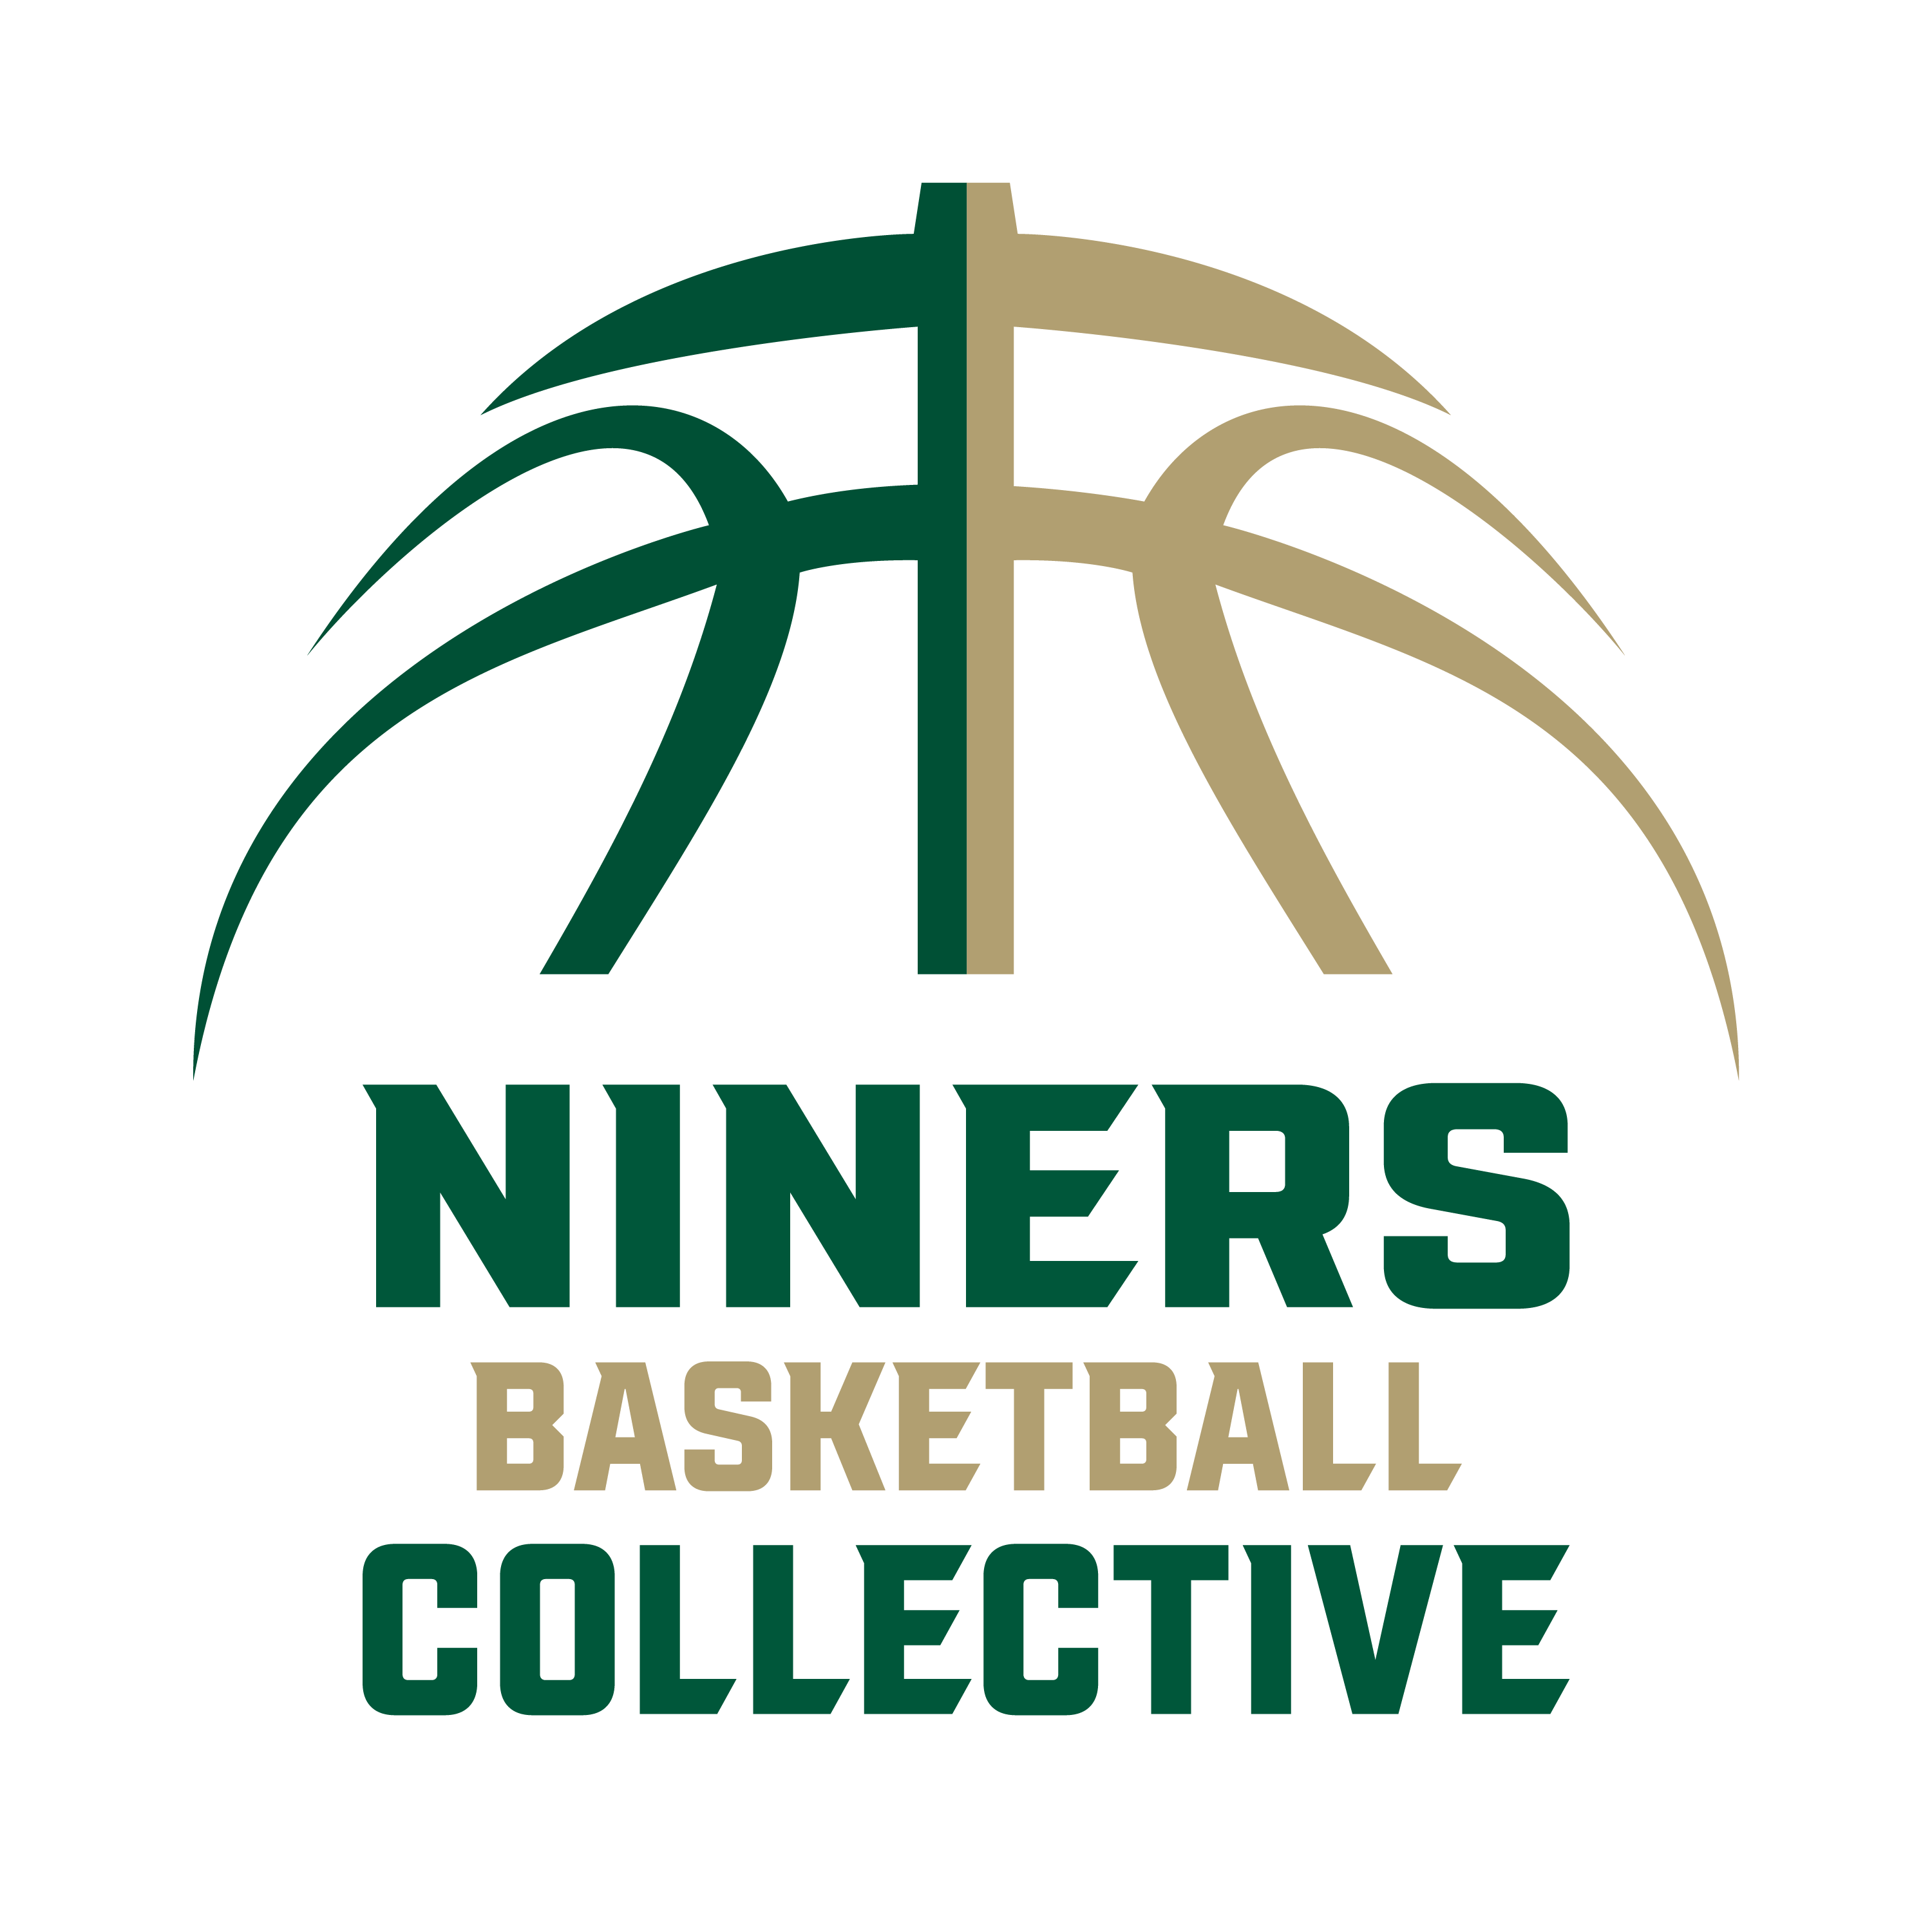 Niners Basketball Collective - 49ers Basketball Forum 🏀 - Forums ...